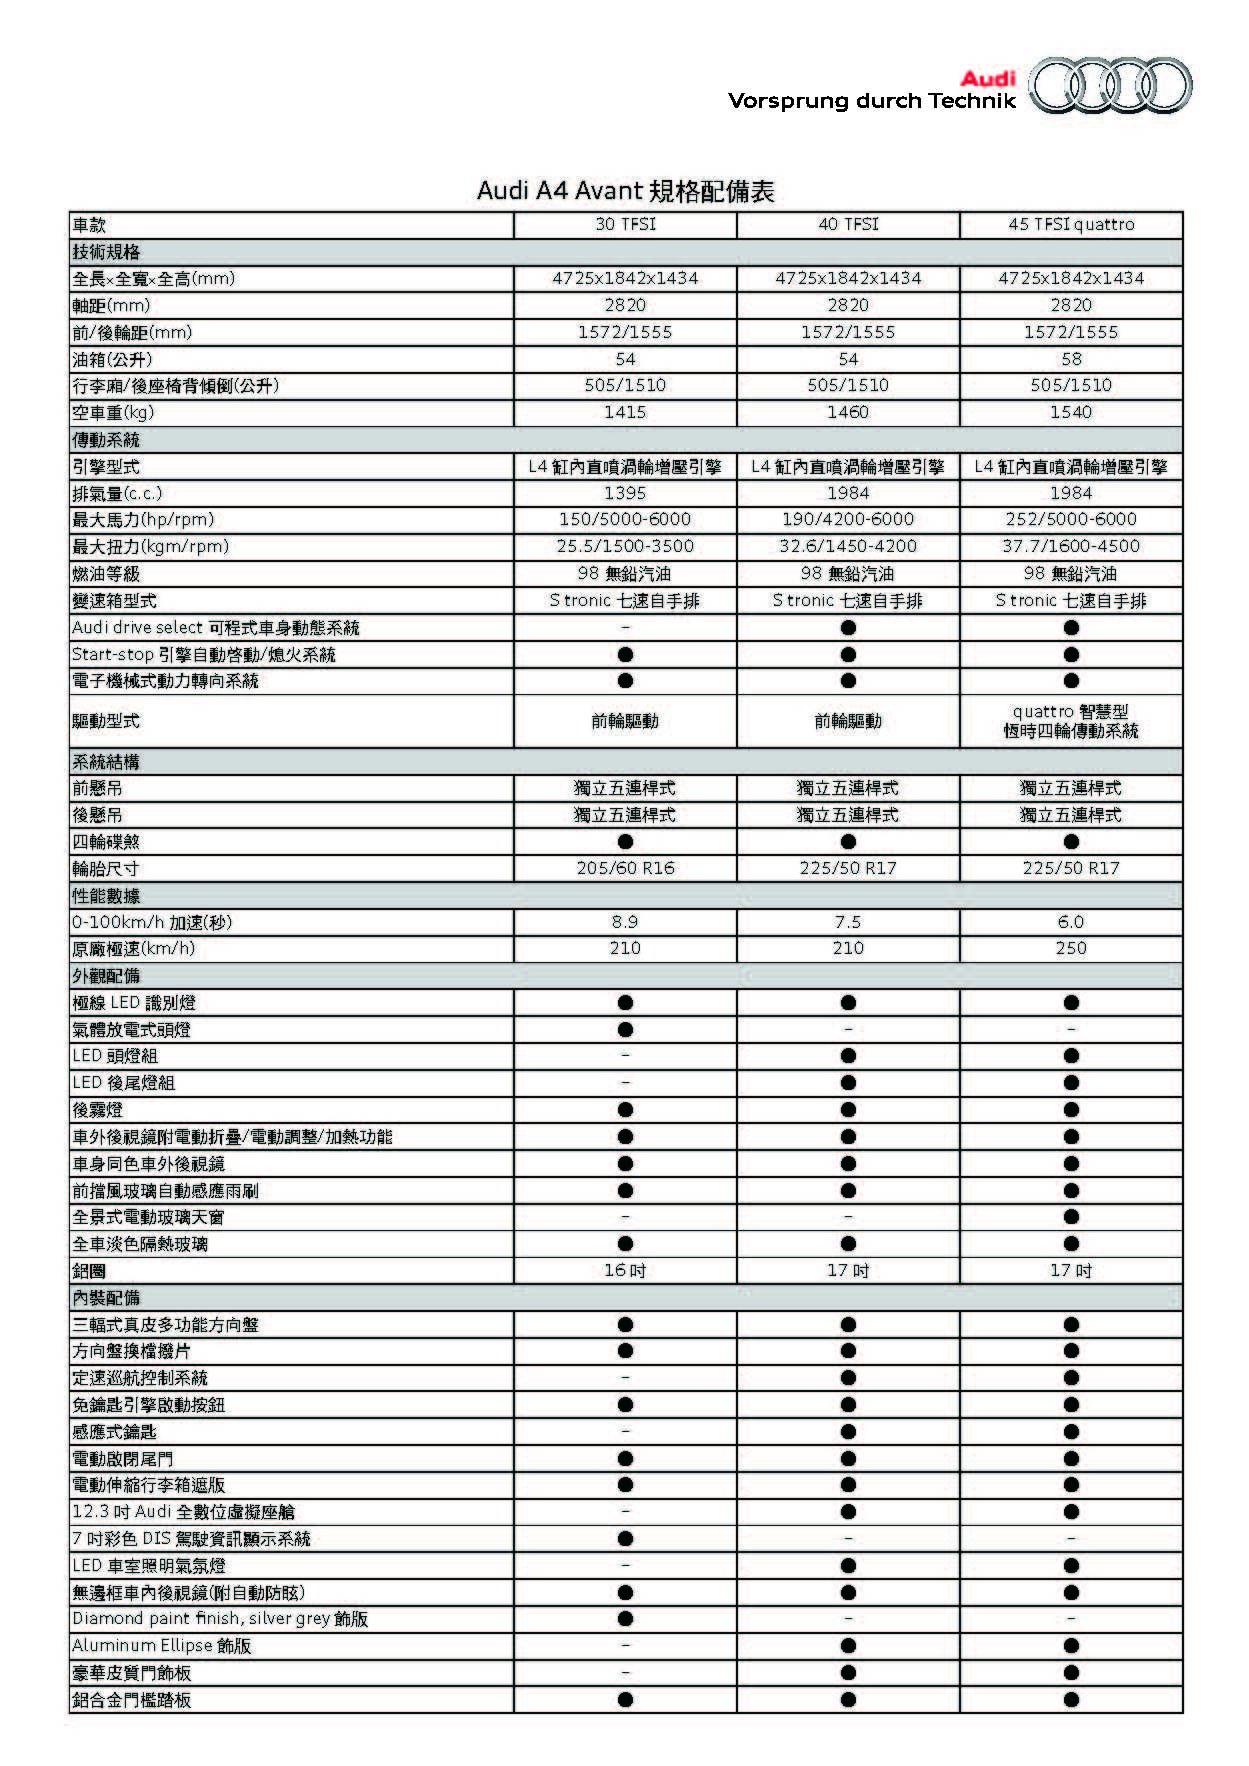 Audi A4 Avant 規格配備表_頁面_1